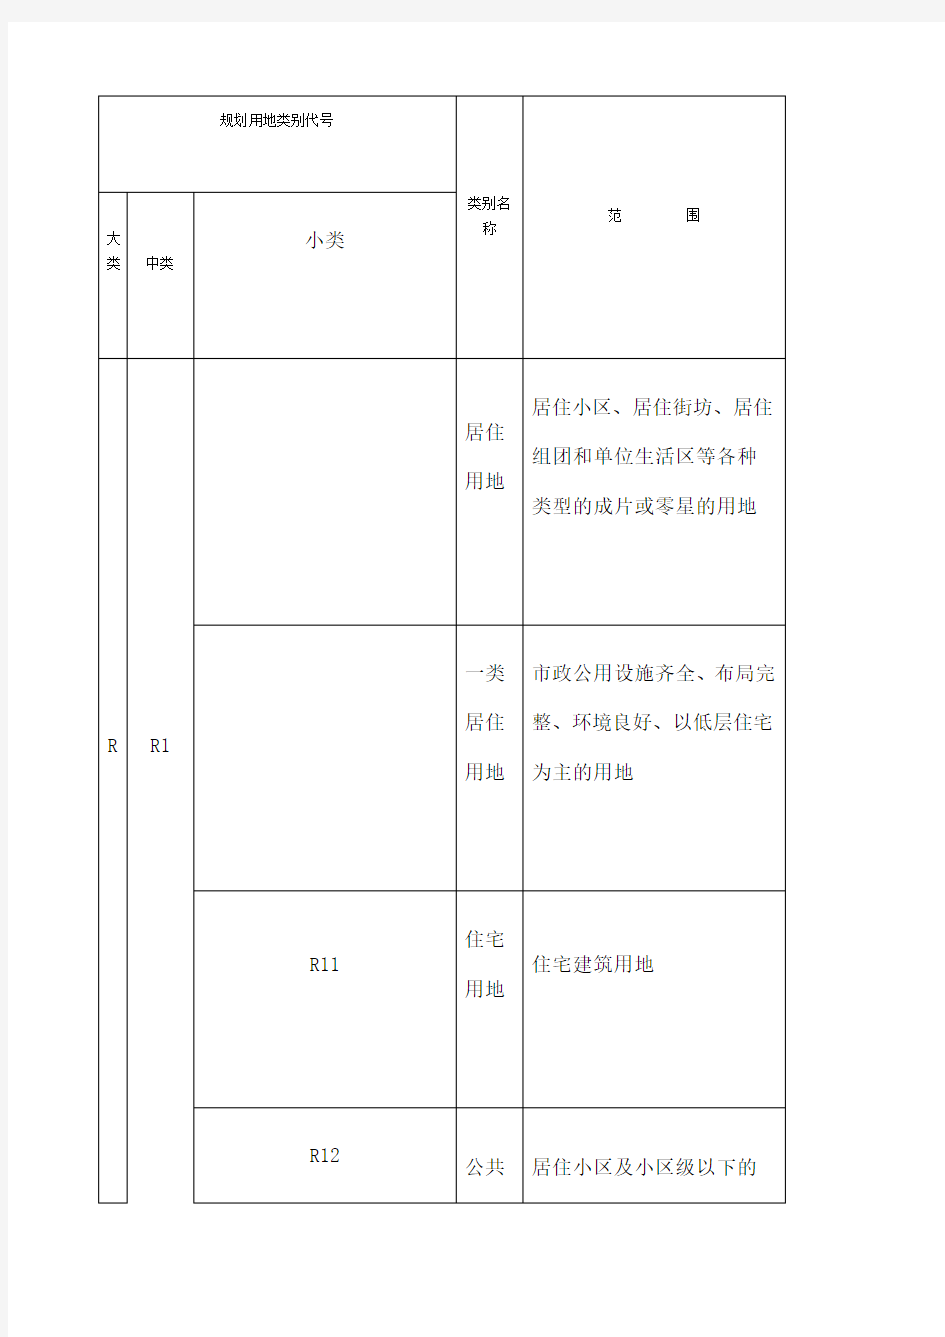 中国政府土地建设城市规划用地性质分类一般字母代码代表什么意思RCTSMWG D U E 